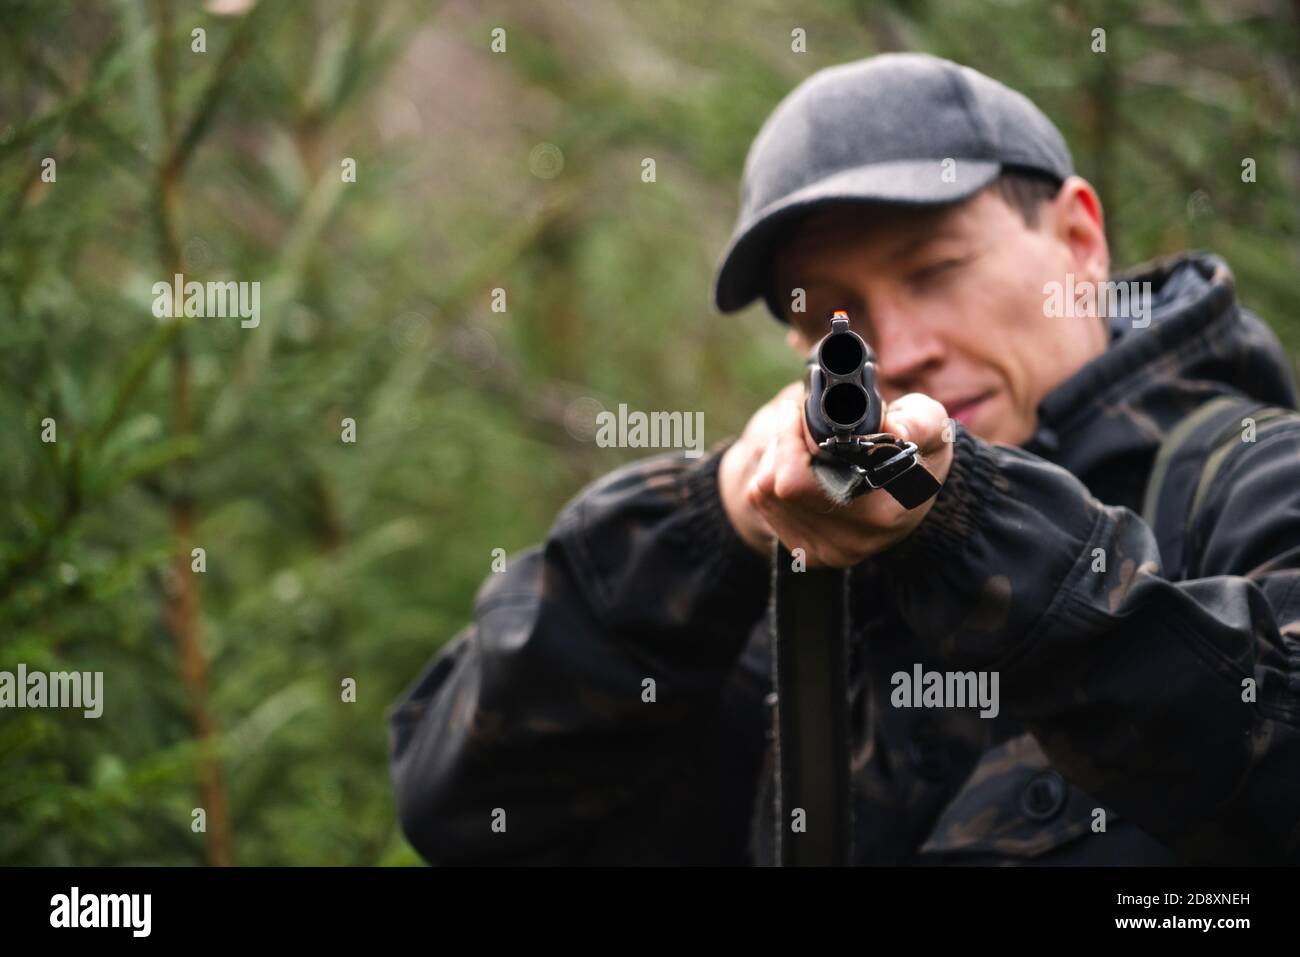 Chasseur visant un fusil de chasse dans une forêt Banque D'Images